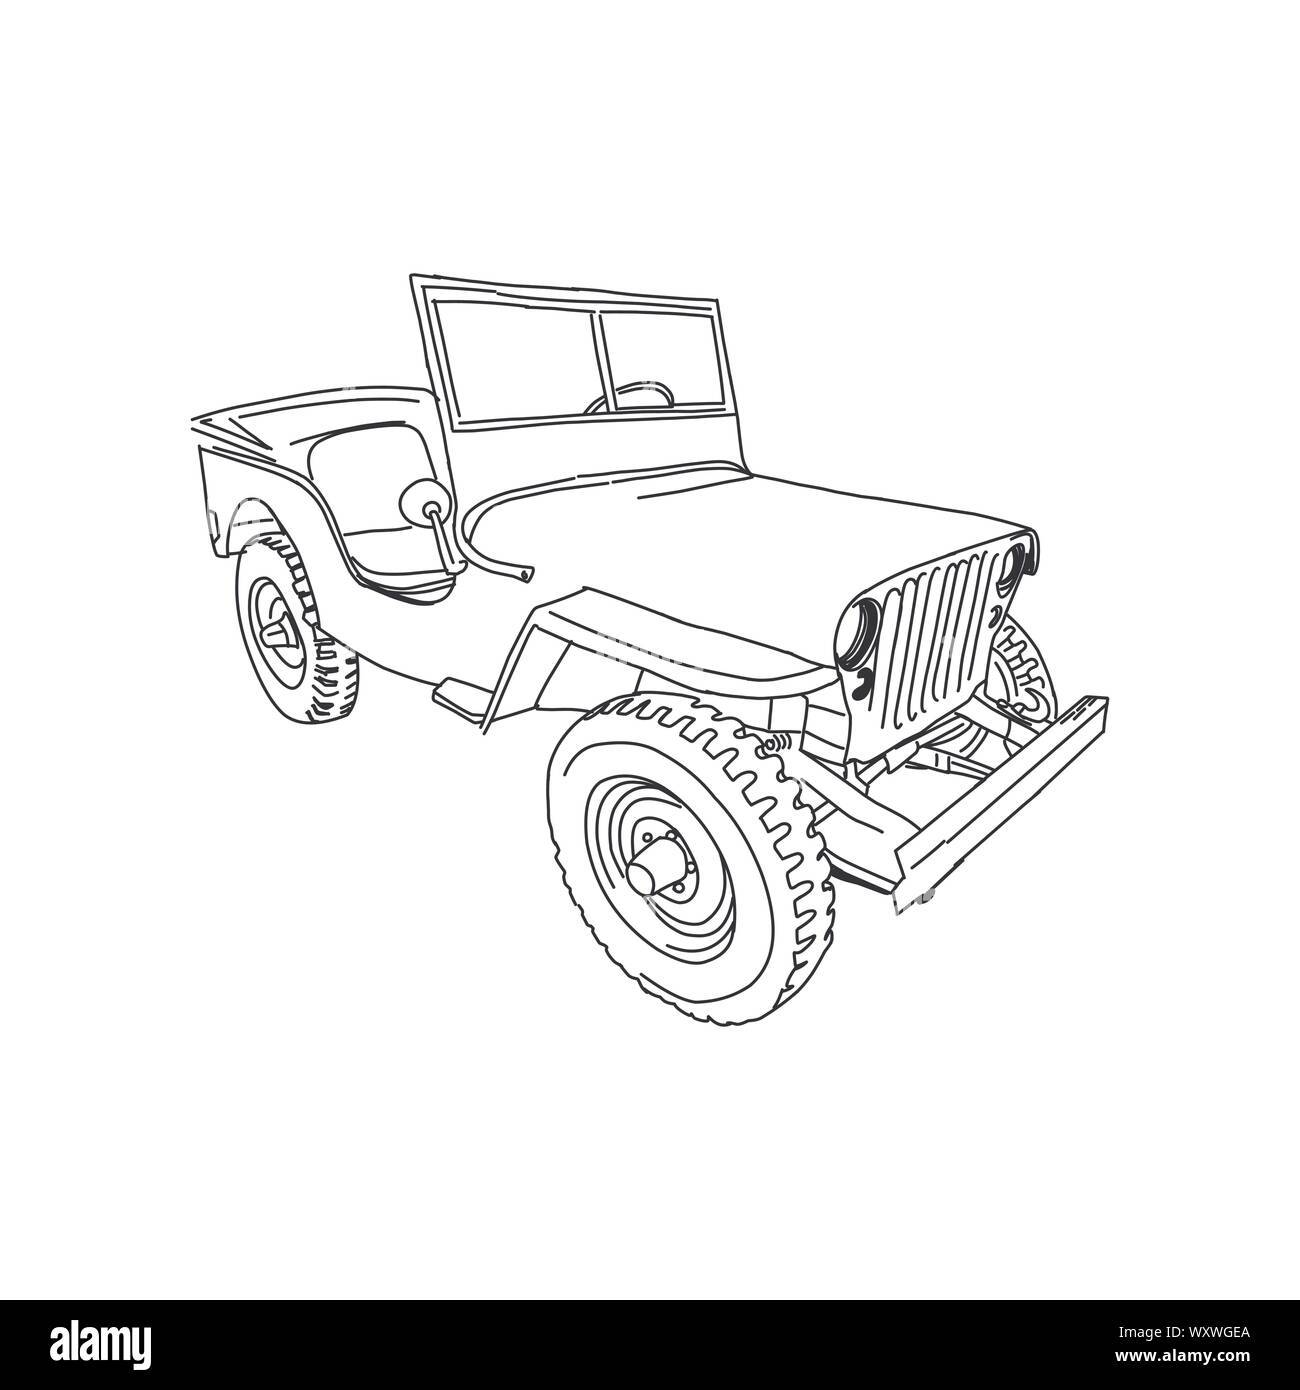 Militärisches Fahrzeug Jeep Armee Vektorlinie kunst Hand gezeichnet Abbildung Stock Vektor